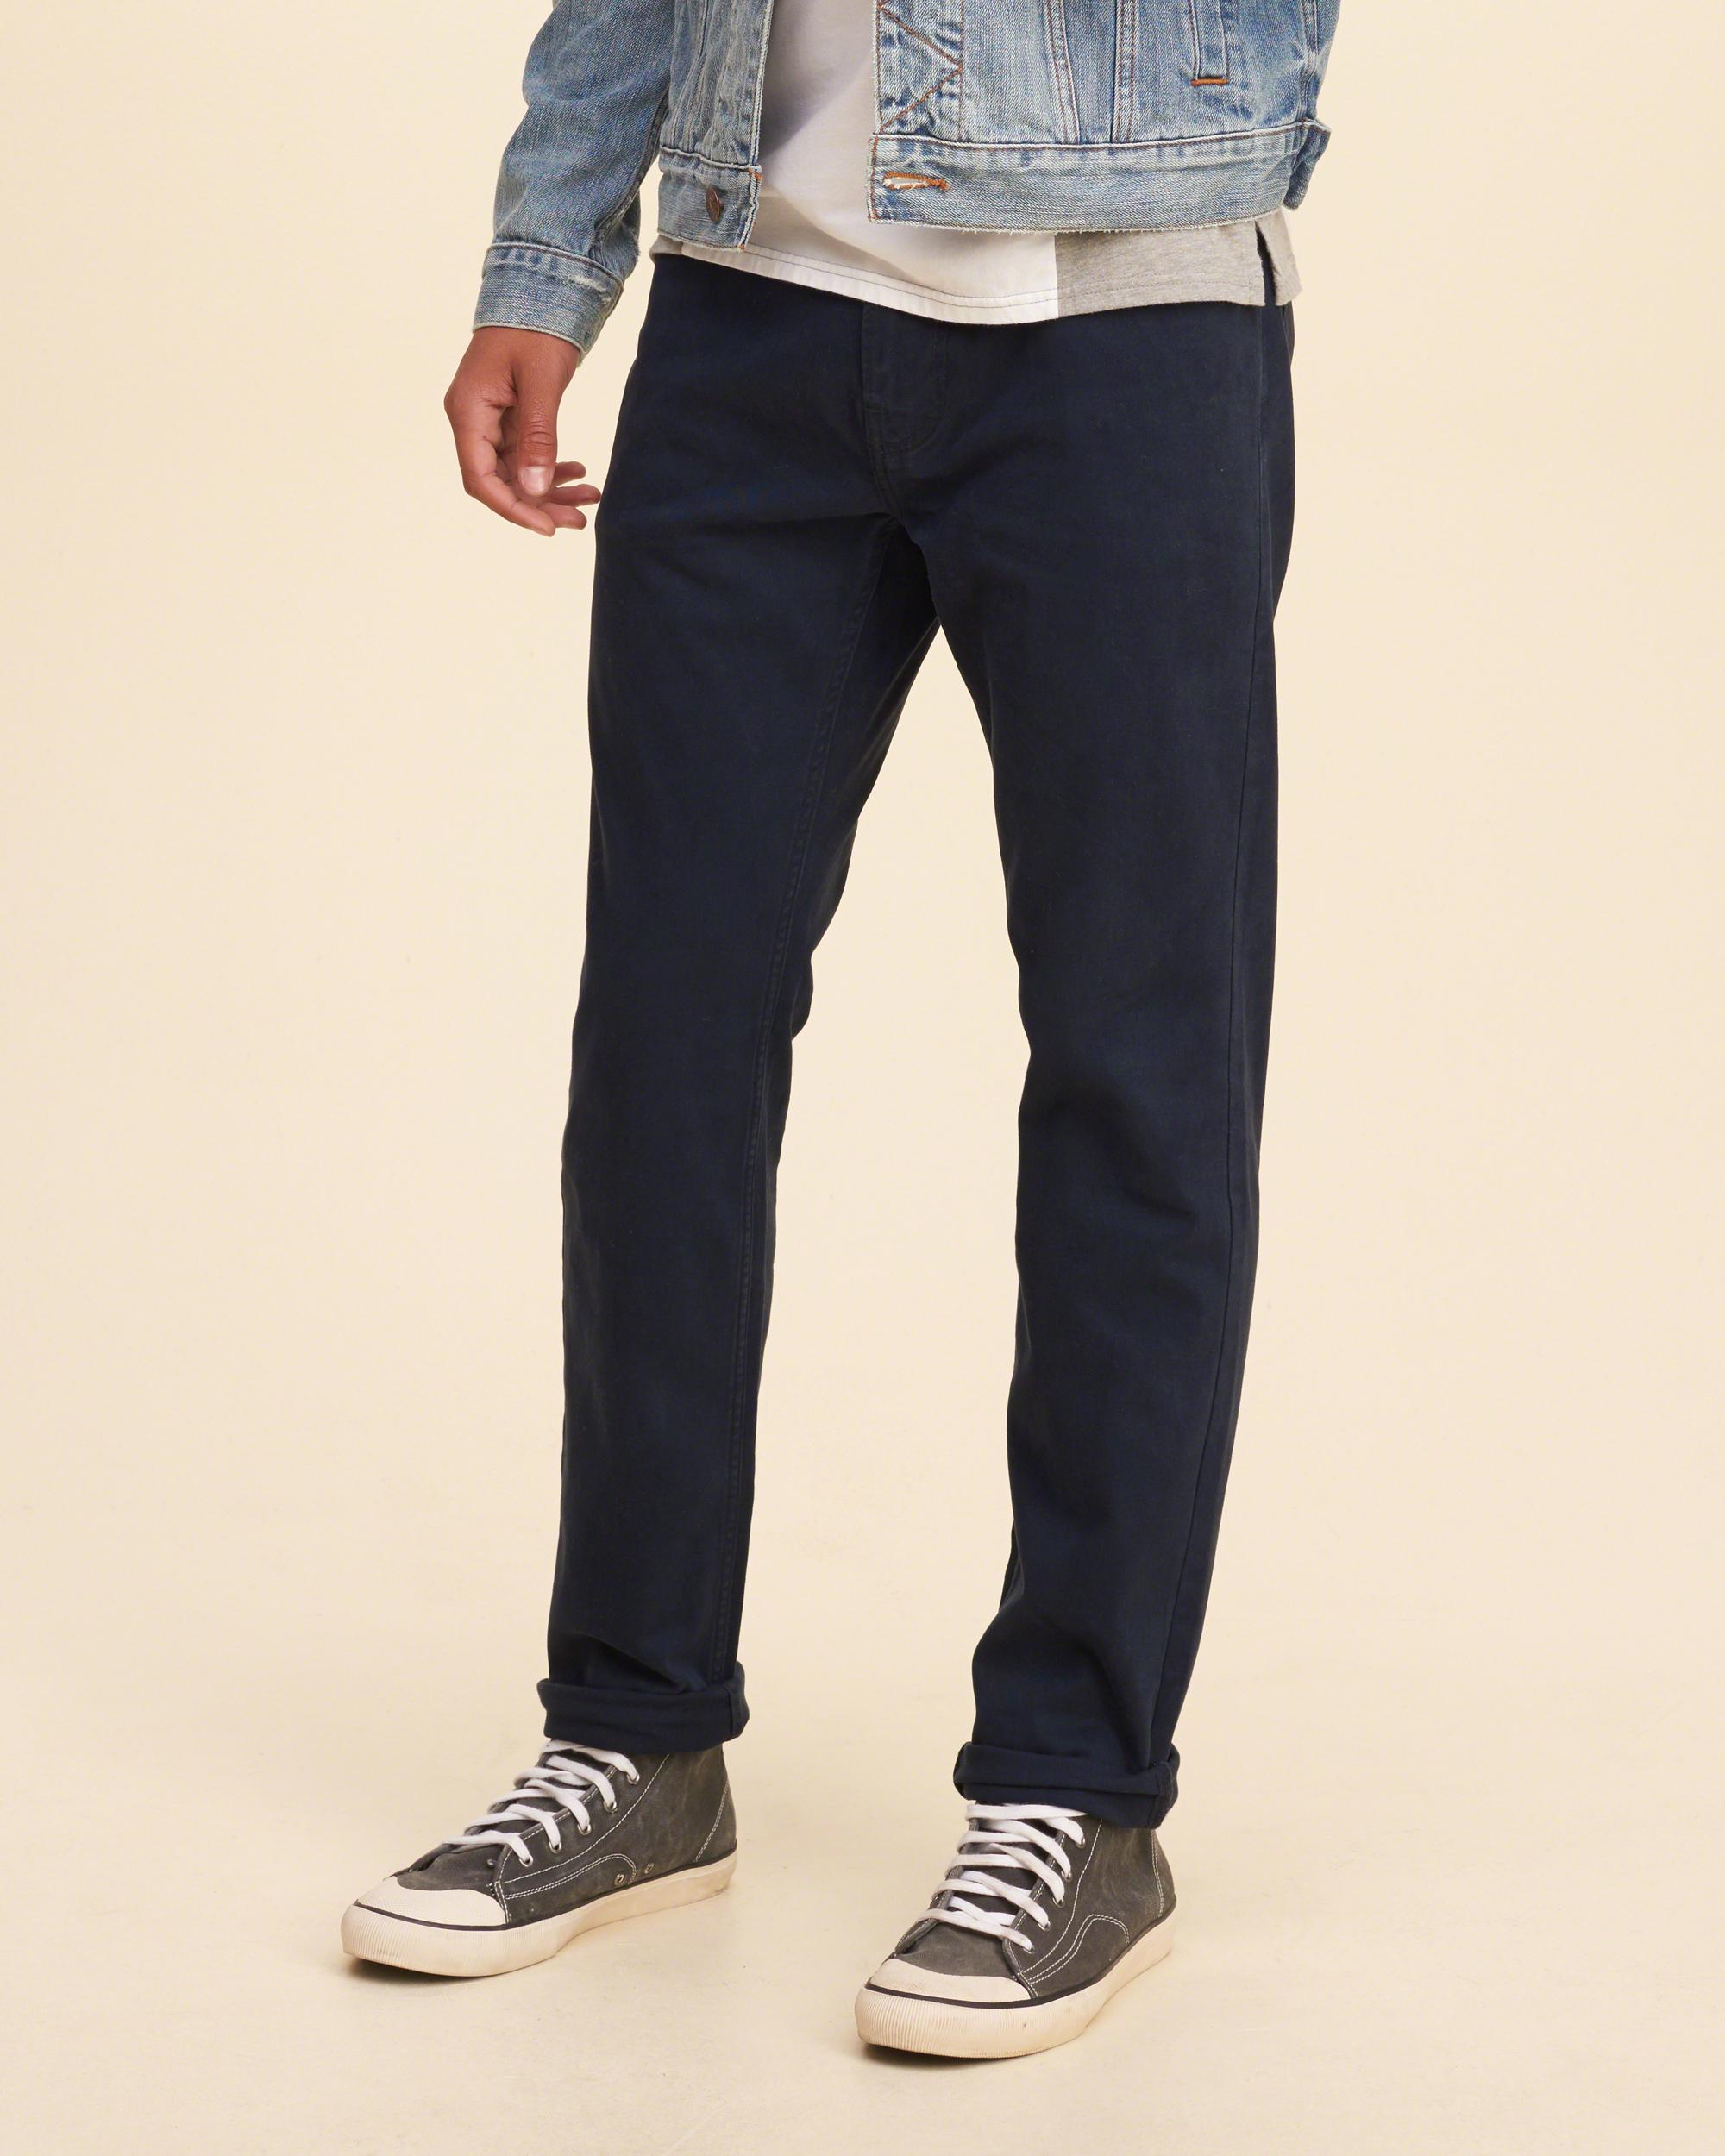 Lyst - Hollister Skinny Five-pocket Pants in Blue for Men